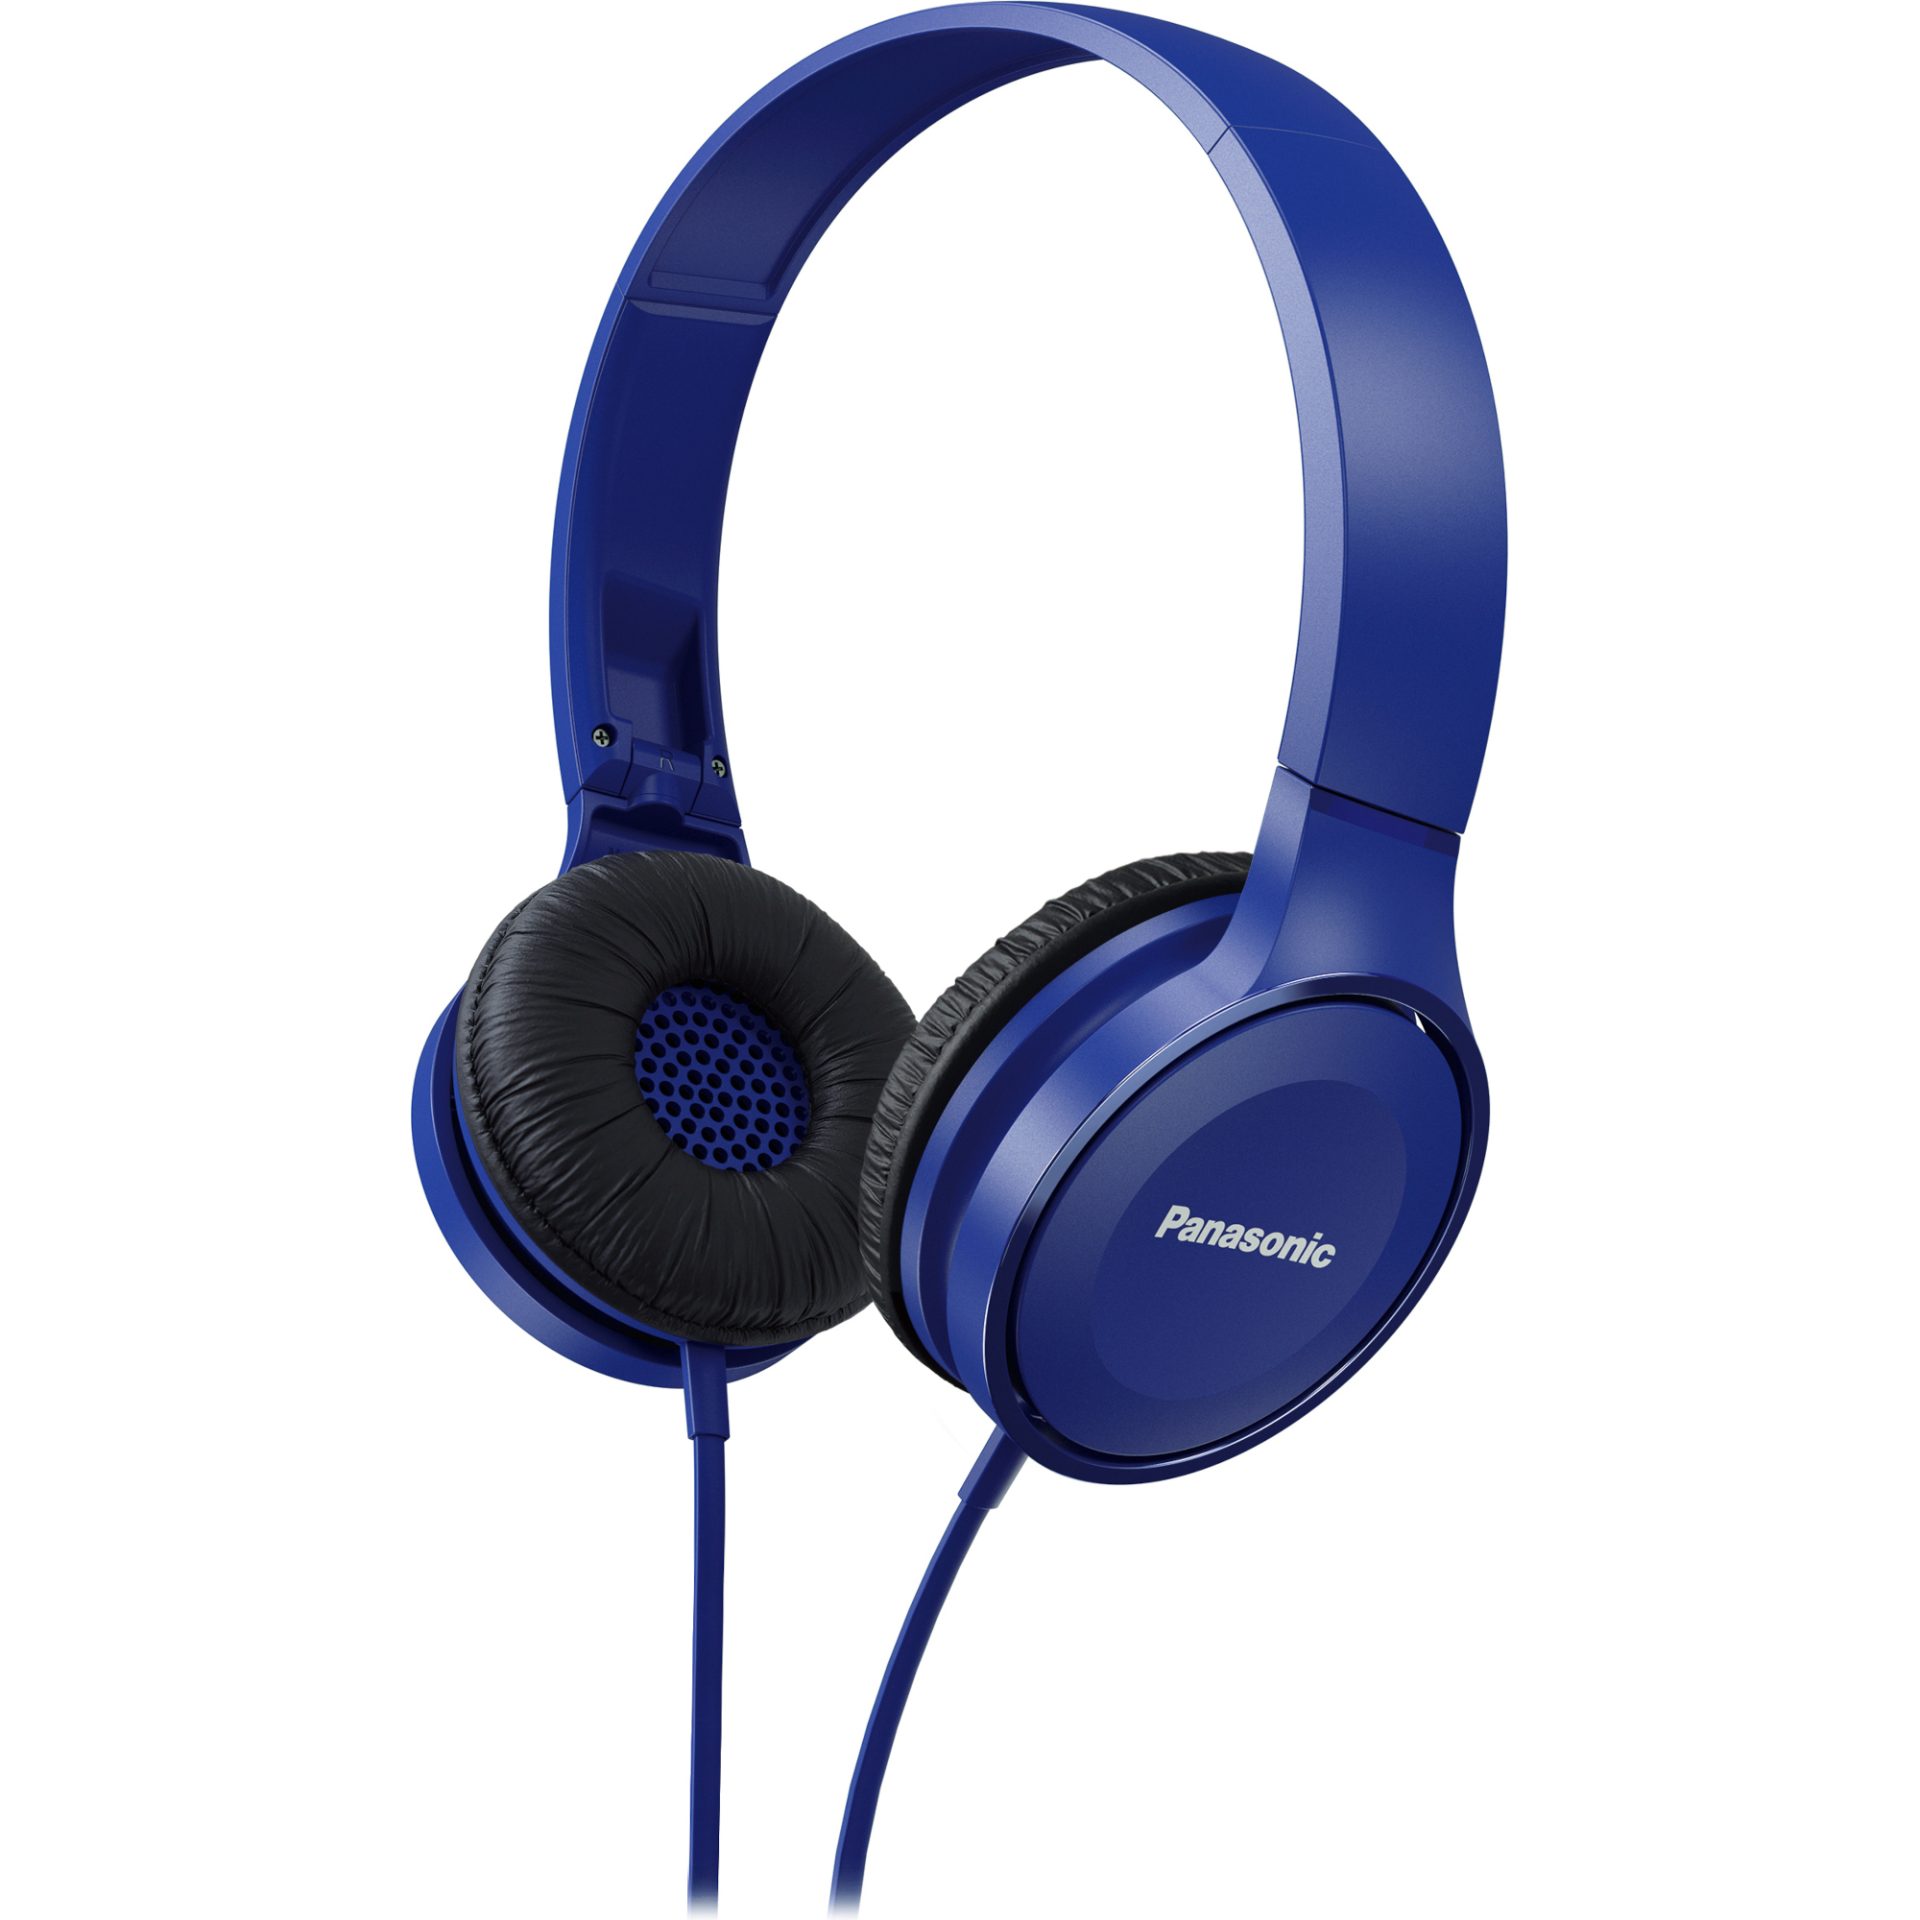 Panasonic RP-HF100 stylová kabelová sluchátka přes uši (30mm neodymový magnetický měniče, skládací dovnitř, pohodlný design), modrá